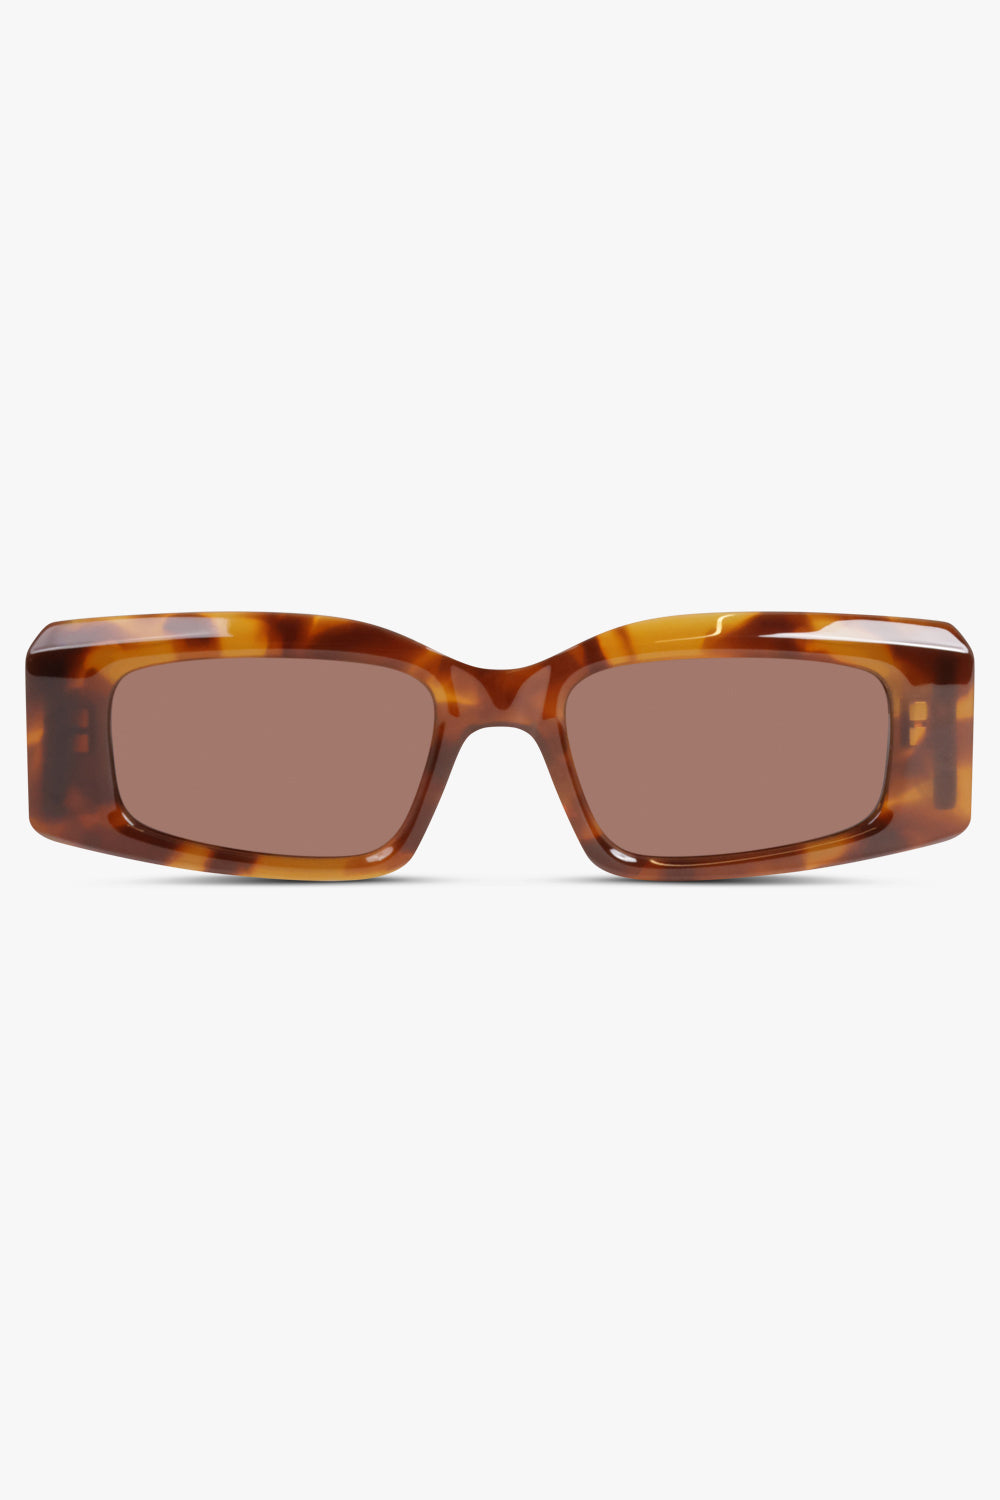 Designer Black Walnut Wood Polarized Sunglasses Men Glasses UV400  Protection Eyewear | The Clothing Company Sydney